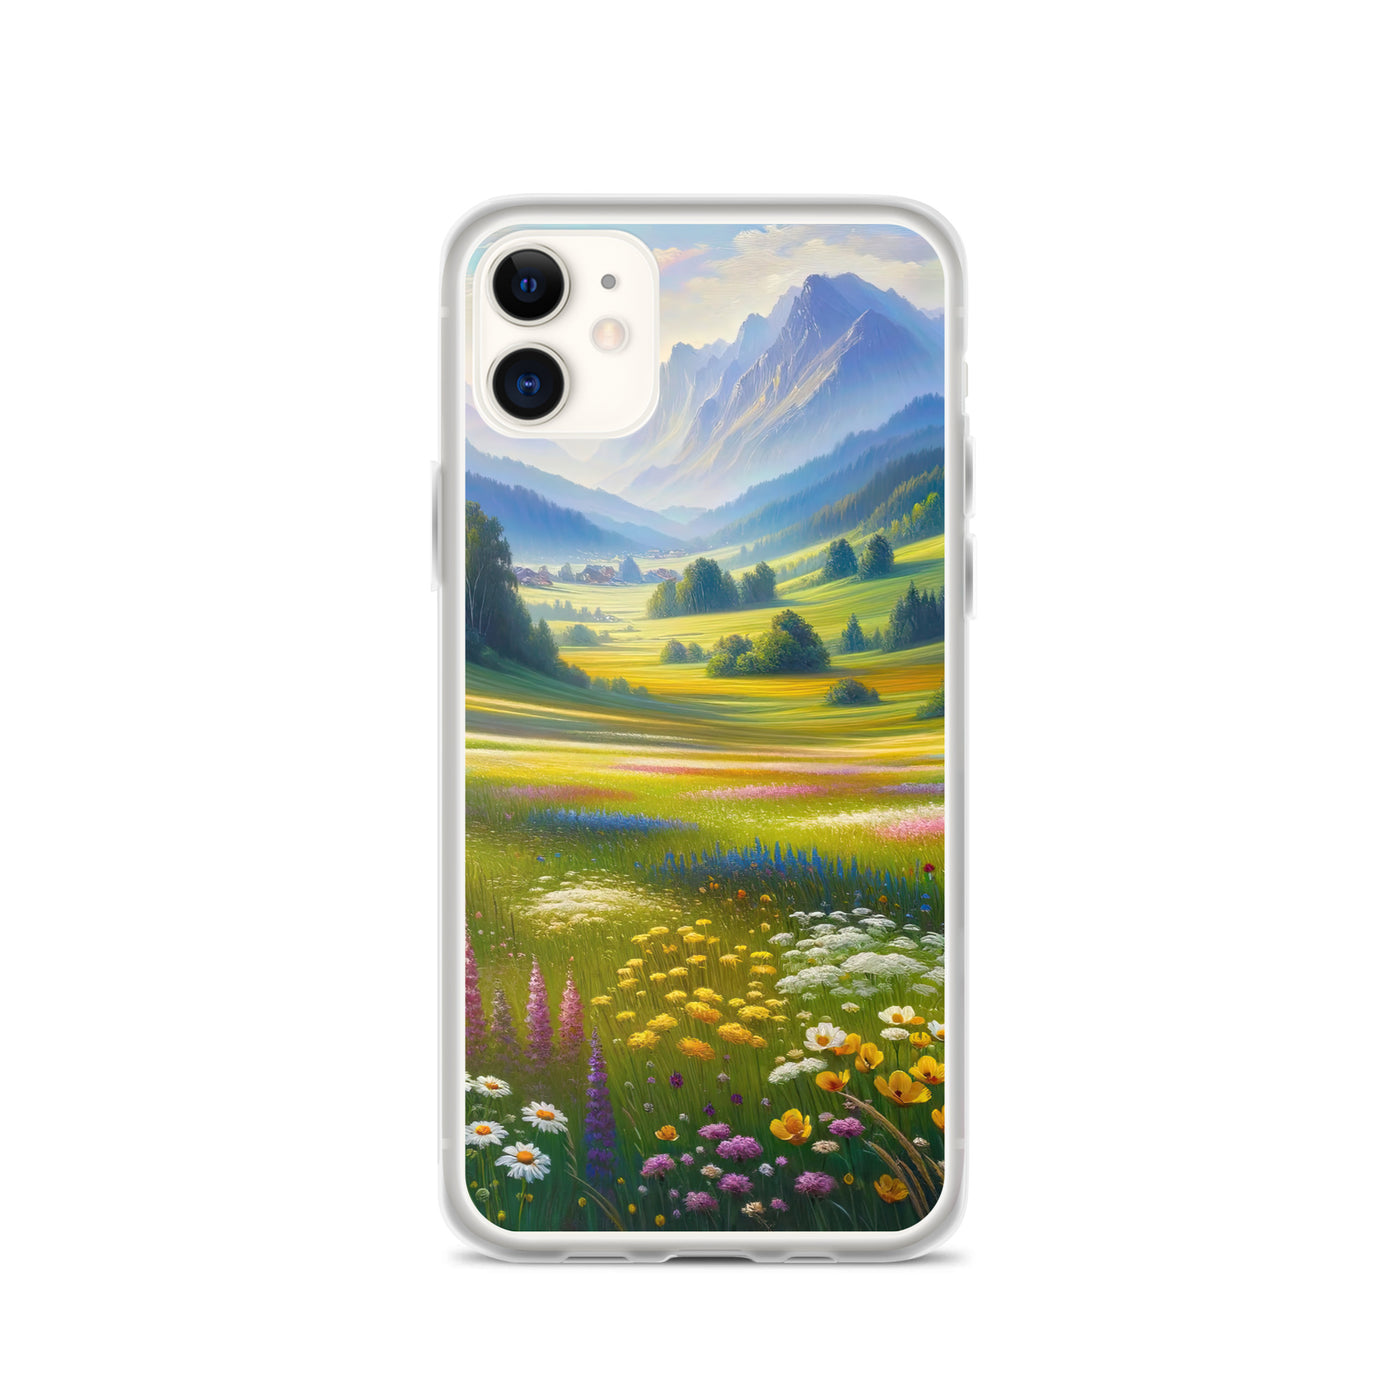 Ölgemälde einer Almwiese, Meer aus Wildblumen in Gelb- und Lilatönen - iPhone Schutzhülle (durchsichtig) berge xxx yyy zzz iPhone 11